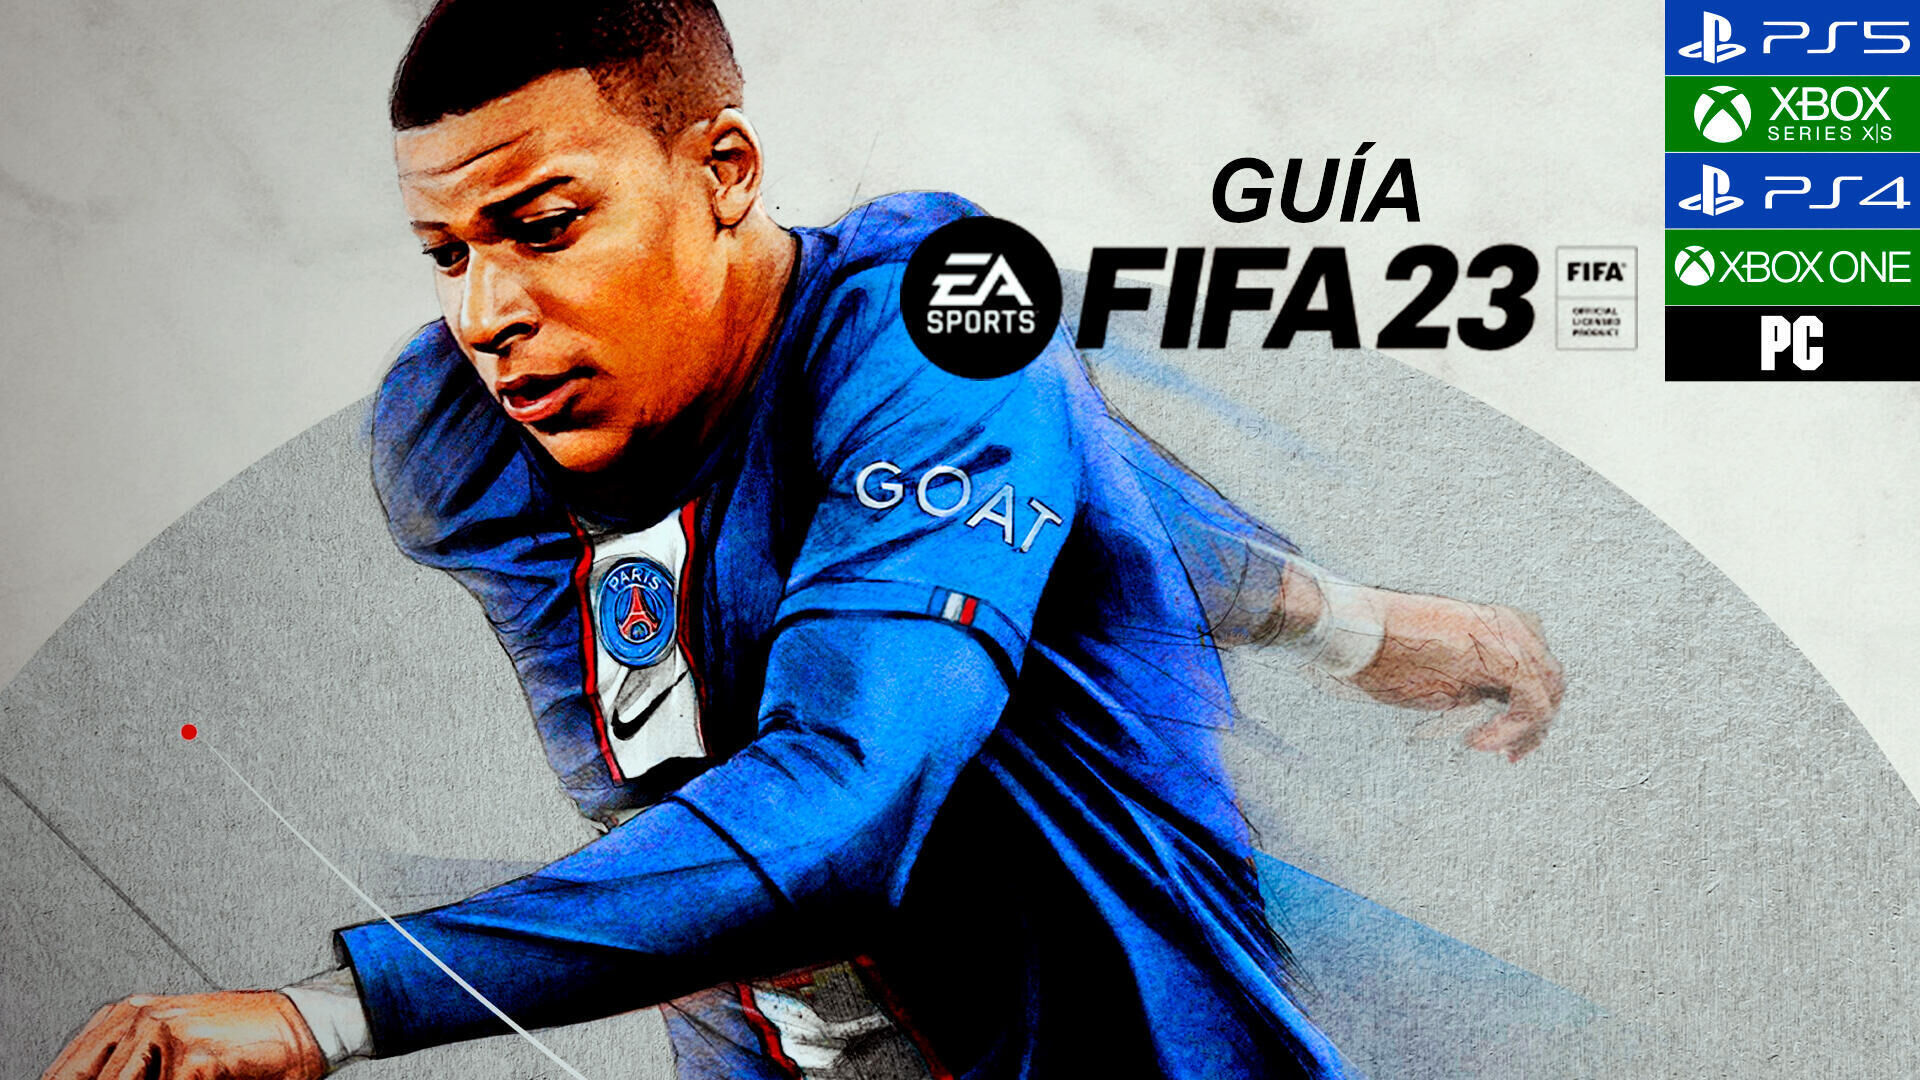 Cuánto pesa FIFA 23? - Guía completa de requisitos del sistemta